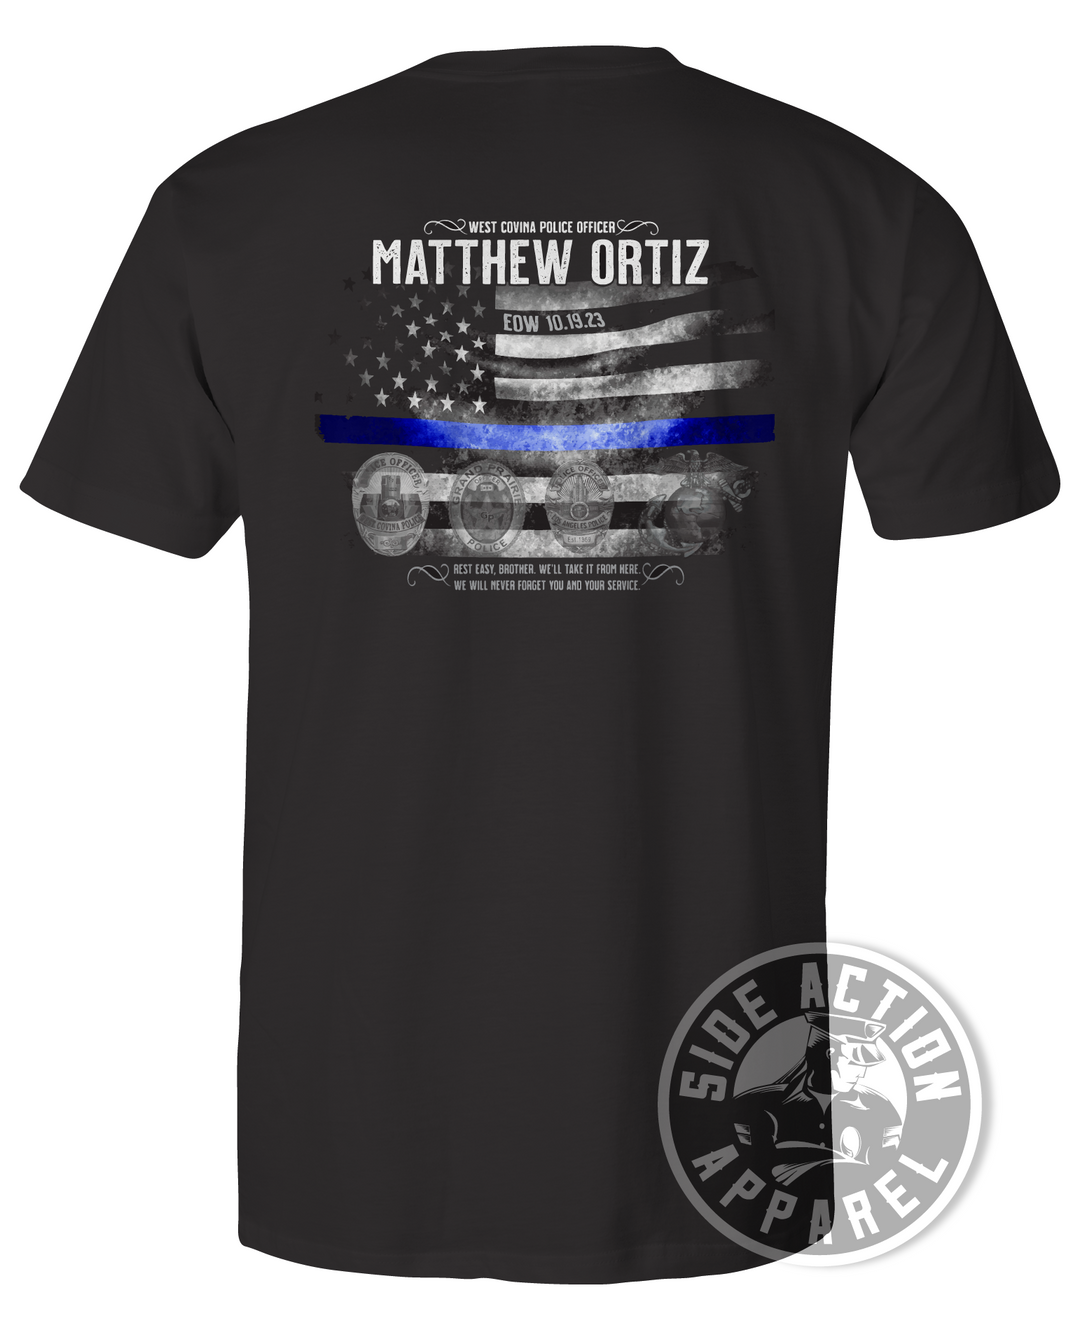 Matthew Ortiz WCPD - Tribute Shirt